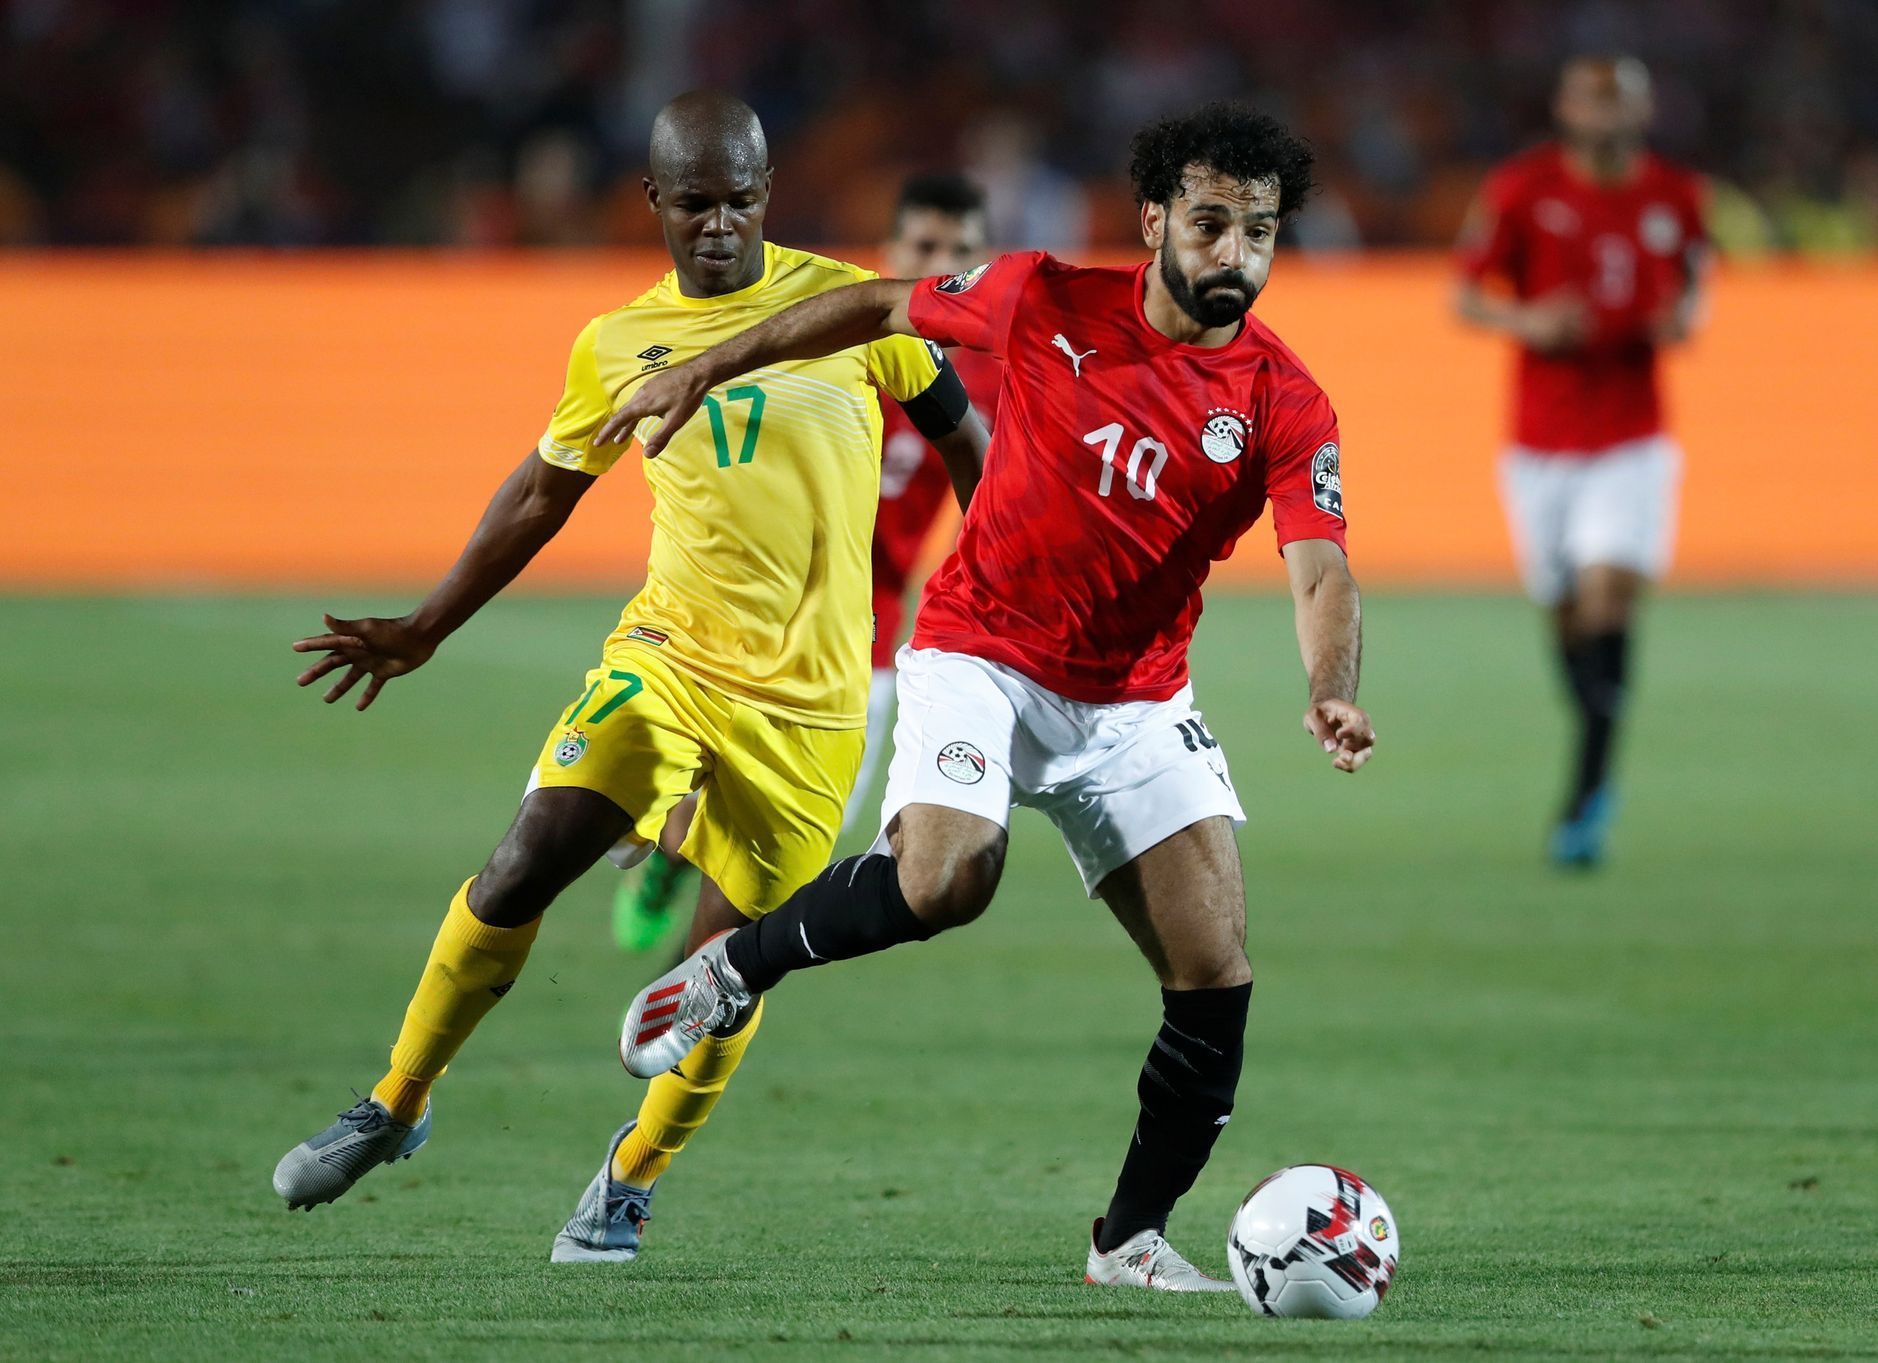 Mistrovství Afriky 2019, Egypt - Zimbabwe: Domácí Mohamed Salah v souboji s Knowledgem Musonou